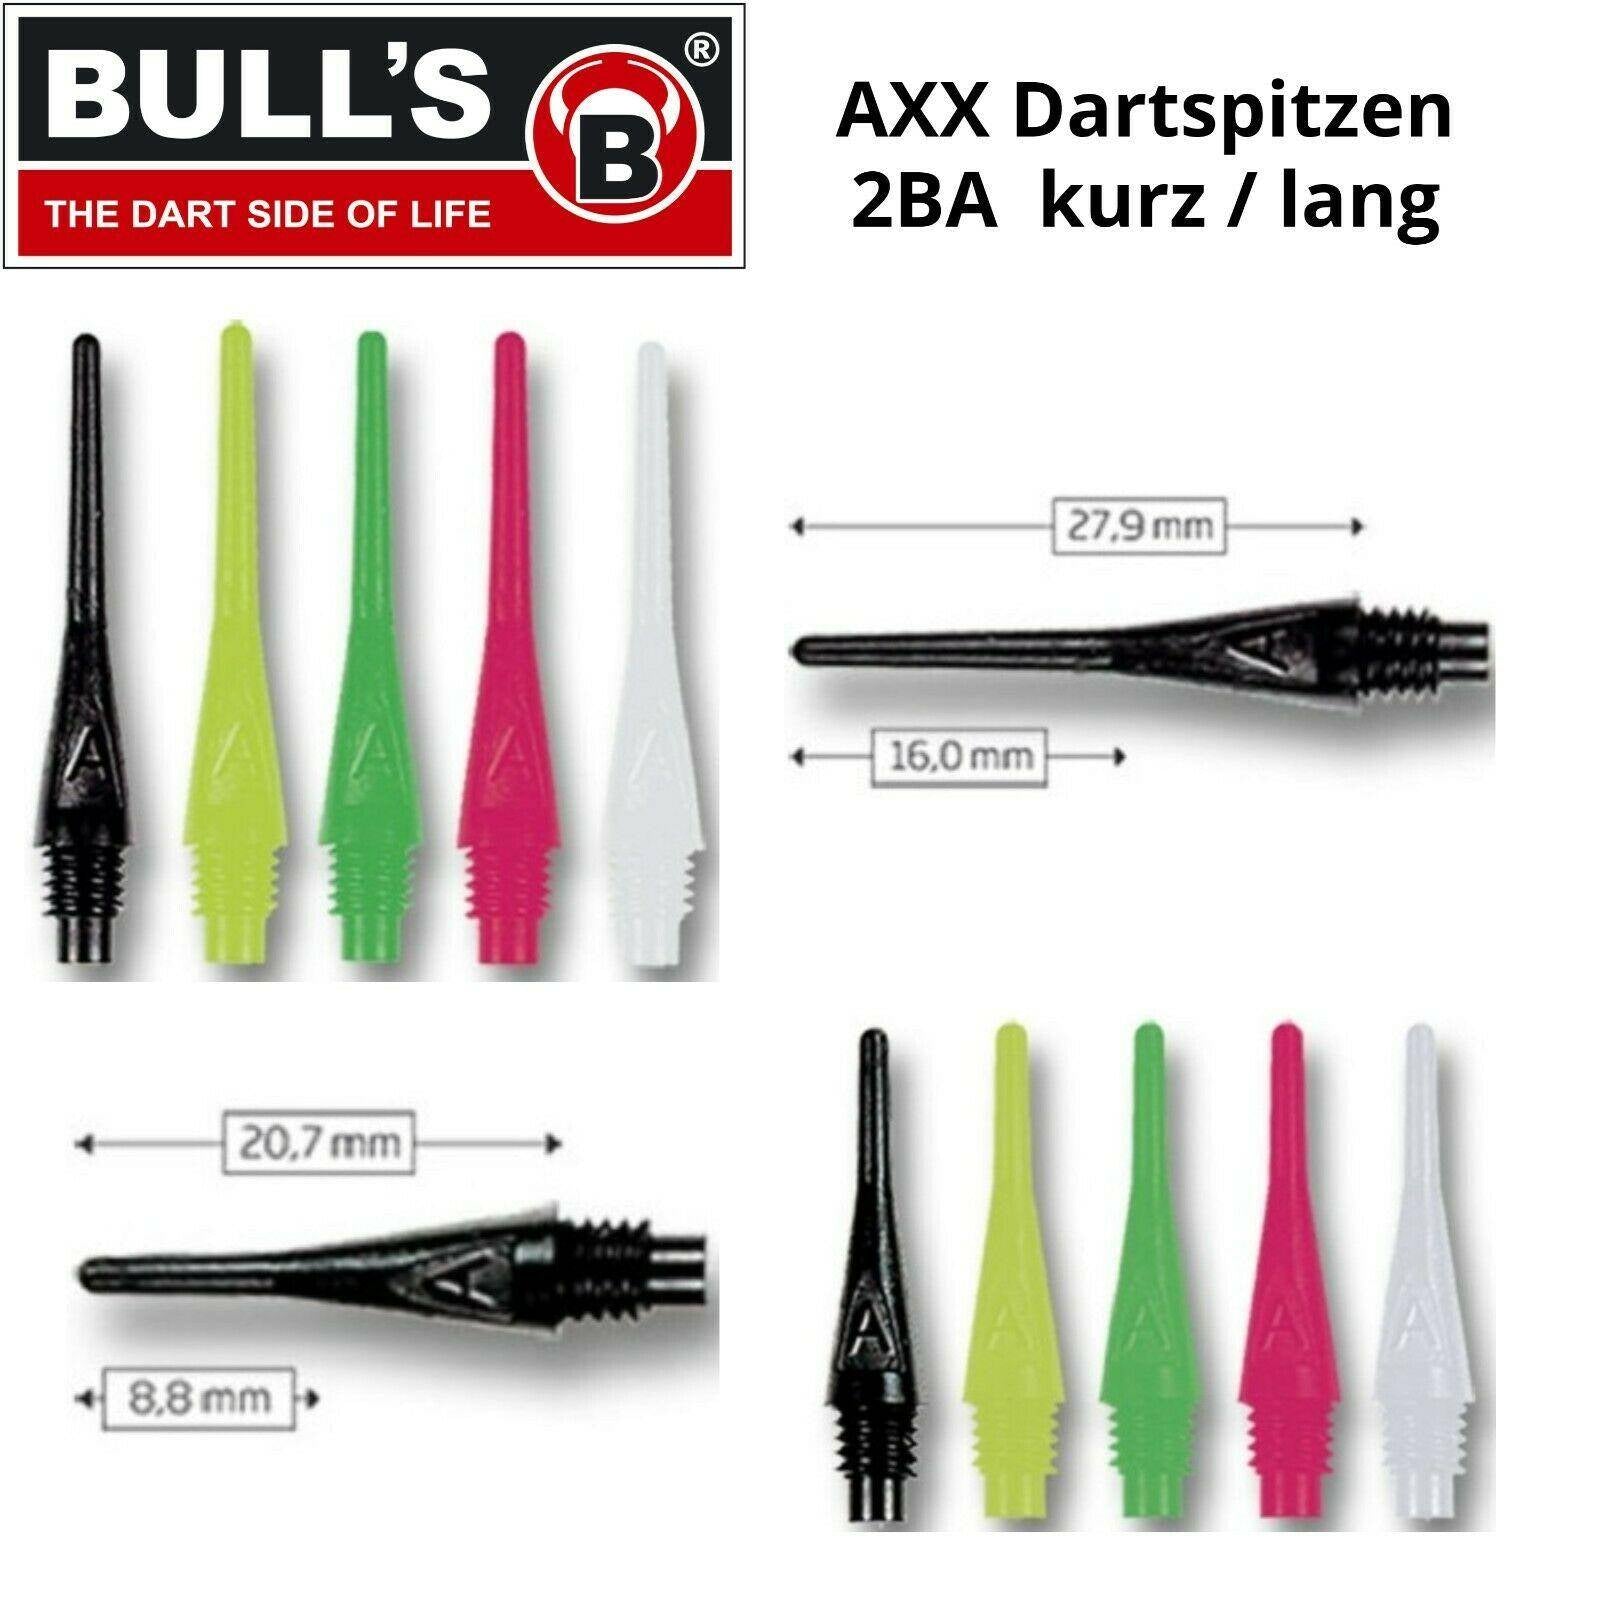 Bulls AXX Dartspitzen 2BA Soft Tip Points kurz/lang - 100 Stück